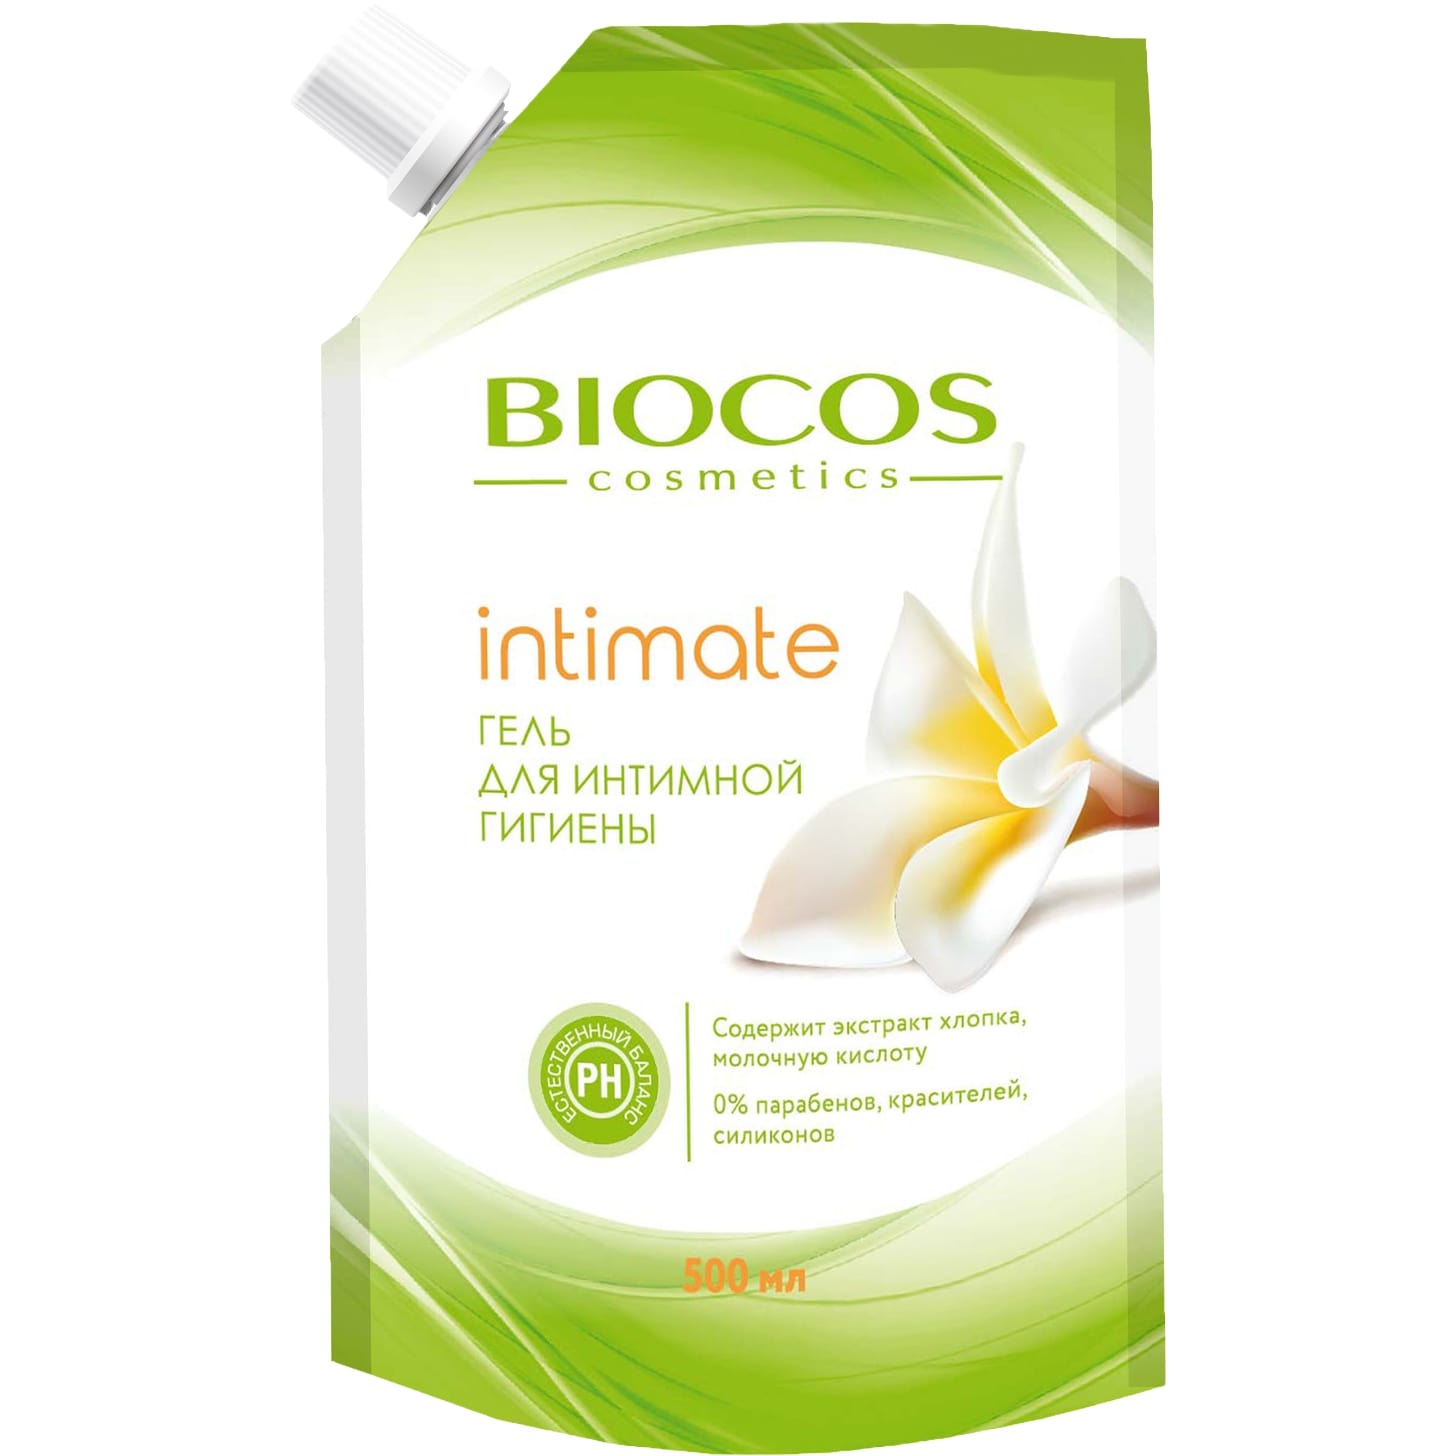 цена Гель для интимной гигиены BioCos intimate с экстрактом хлопка и молочной кислотой 500 мл